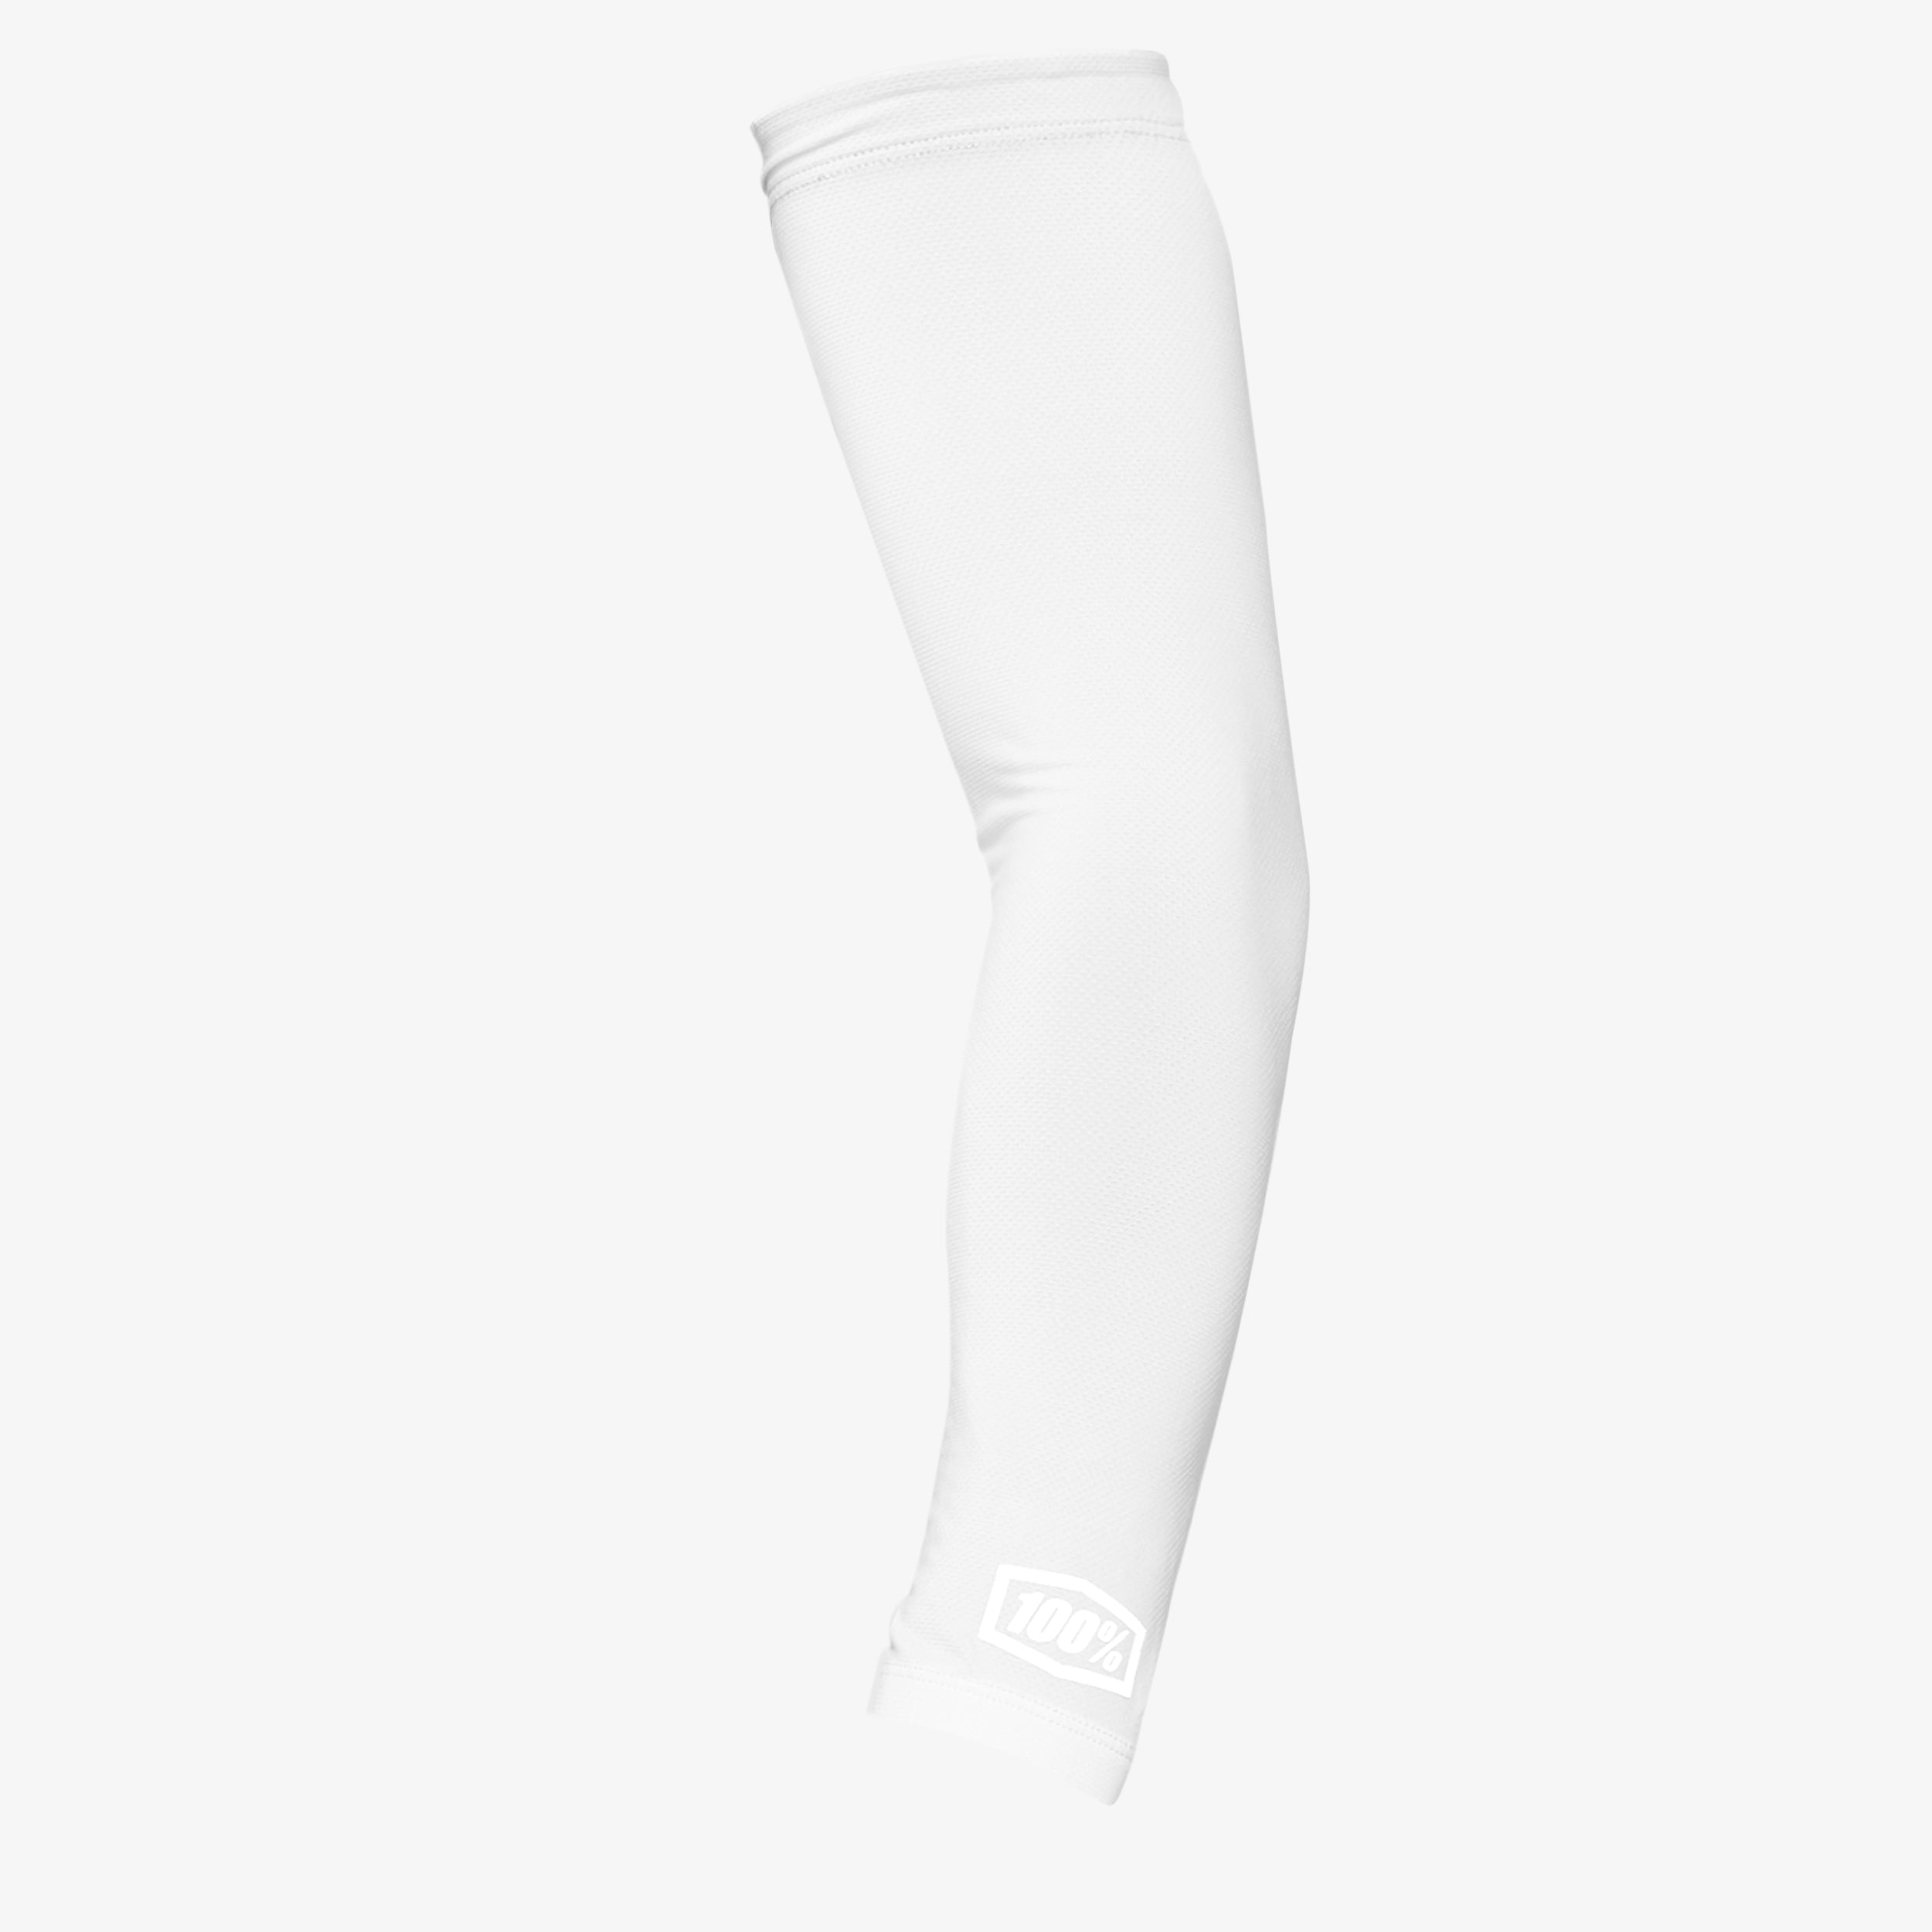 Basic White Arm Sleeve 